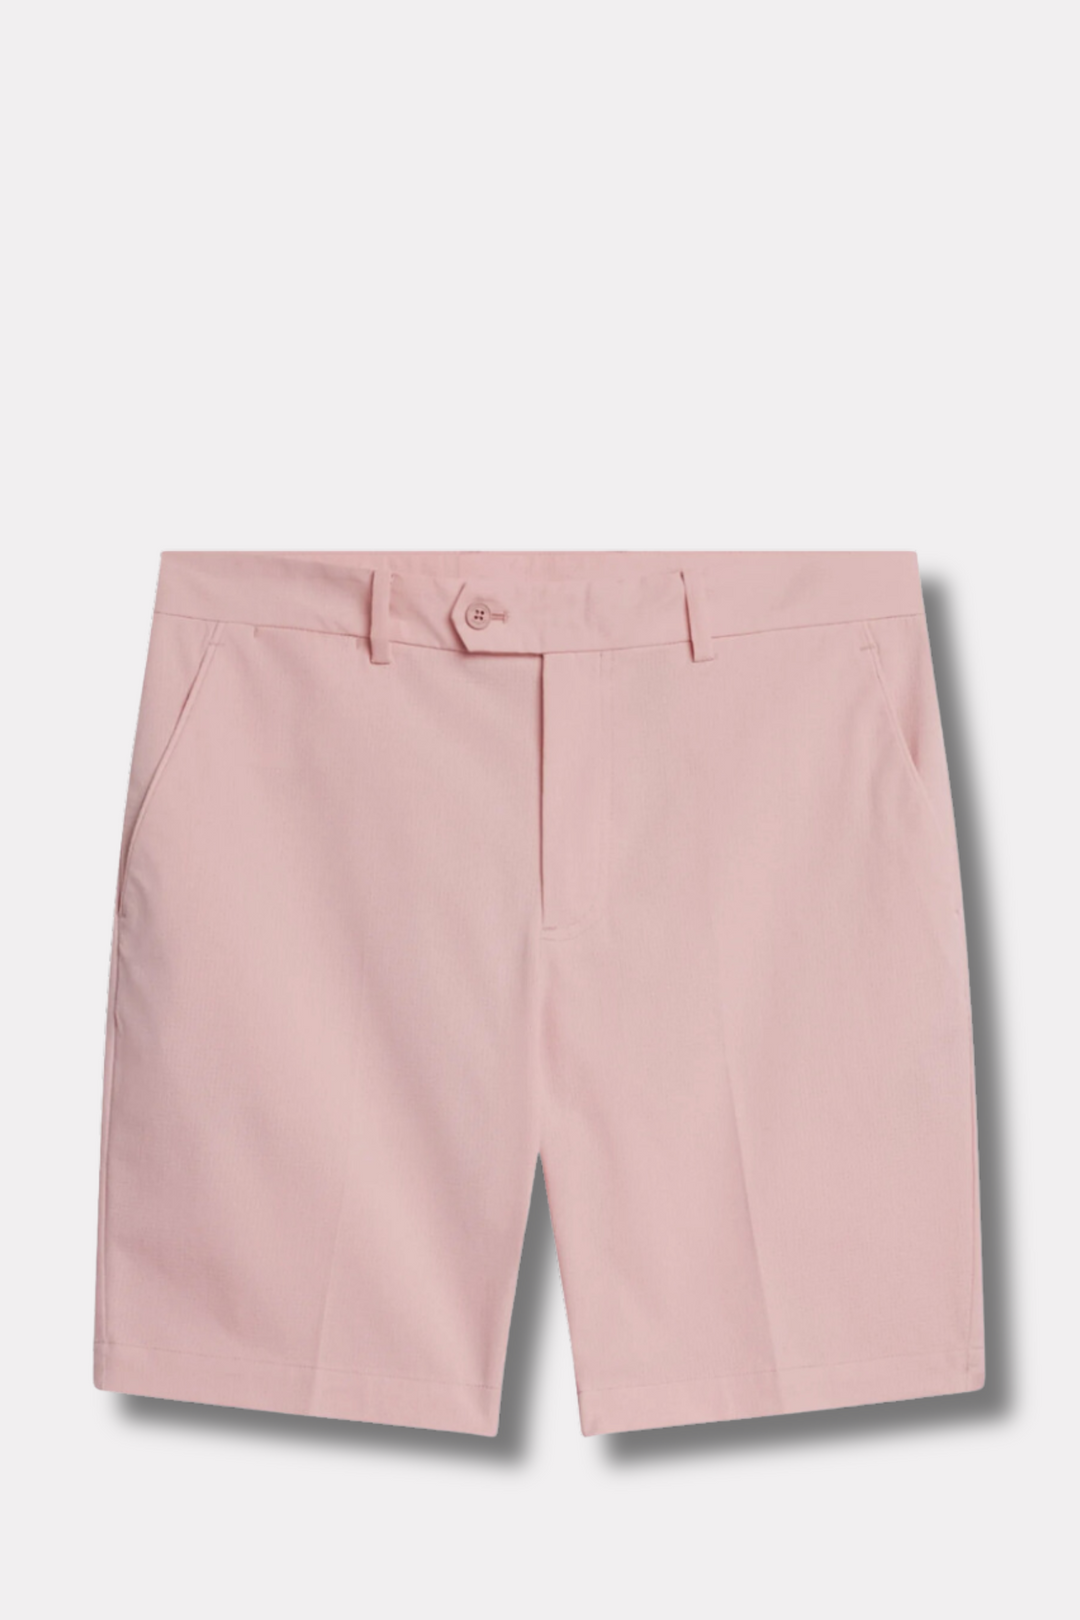 Vent Tight Shorts Powder Pink